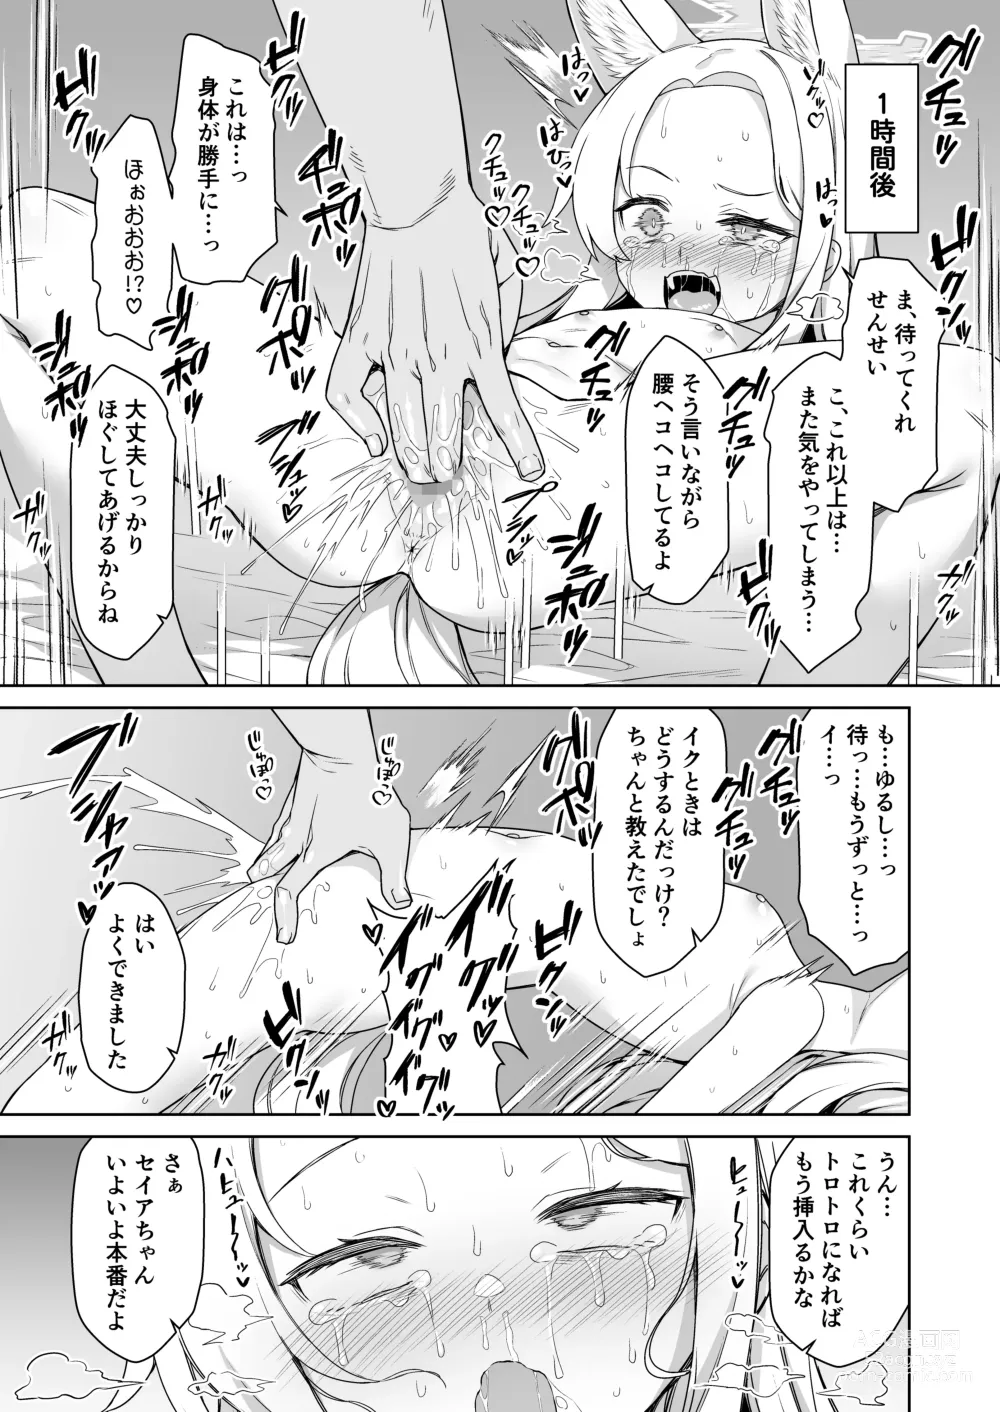 Page 13 of doujinshi Yurizono Seia wa Koyoi mo Midara na Yume wo Miru.